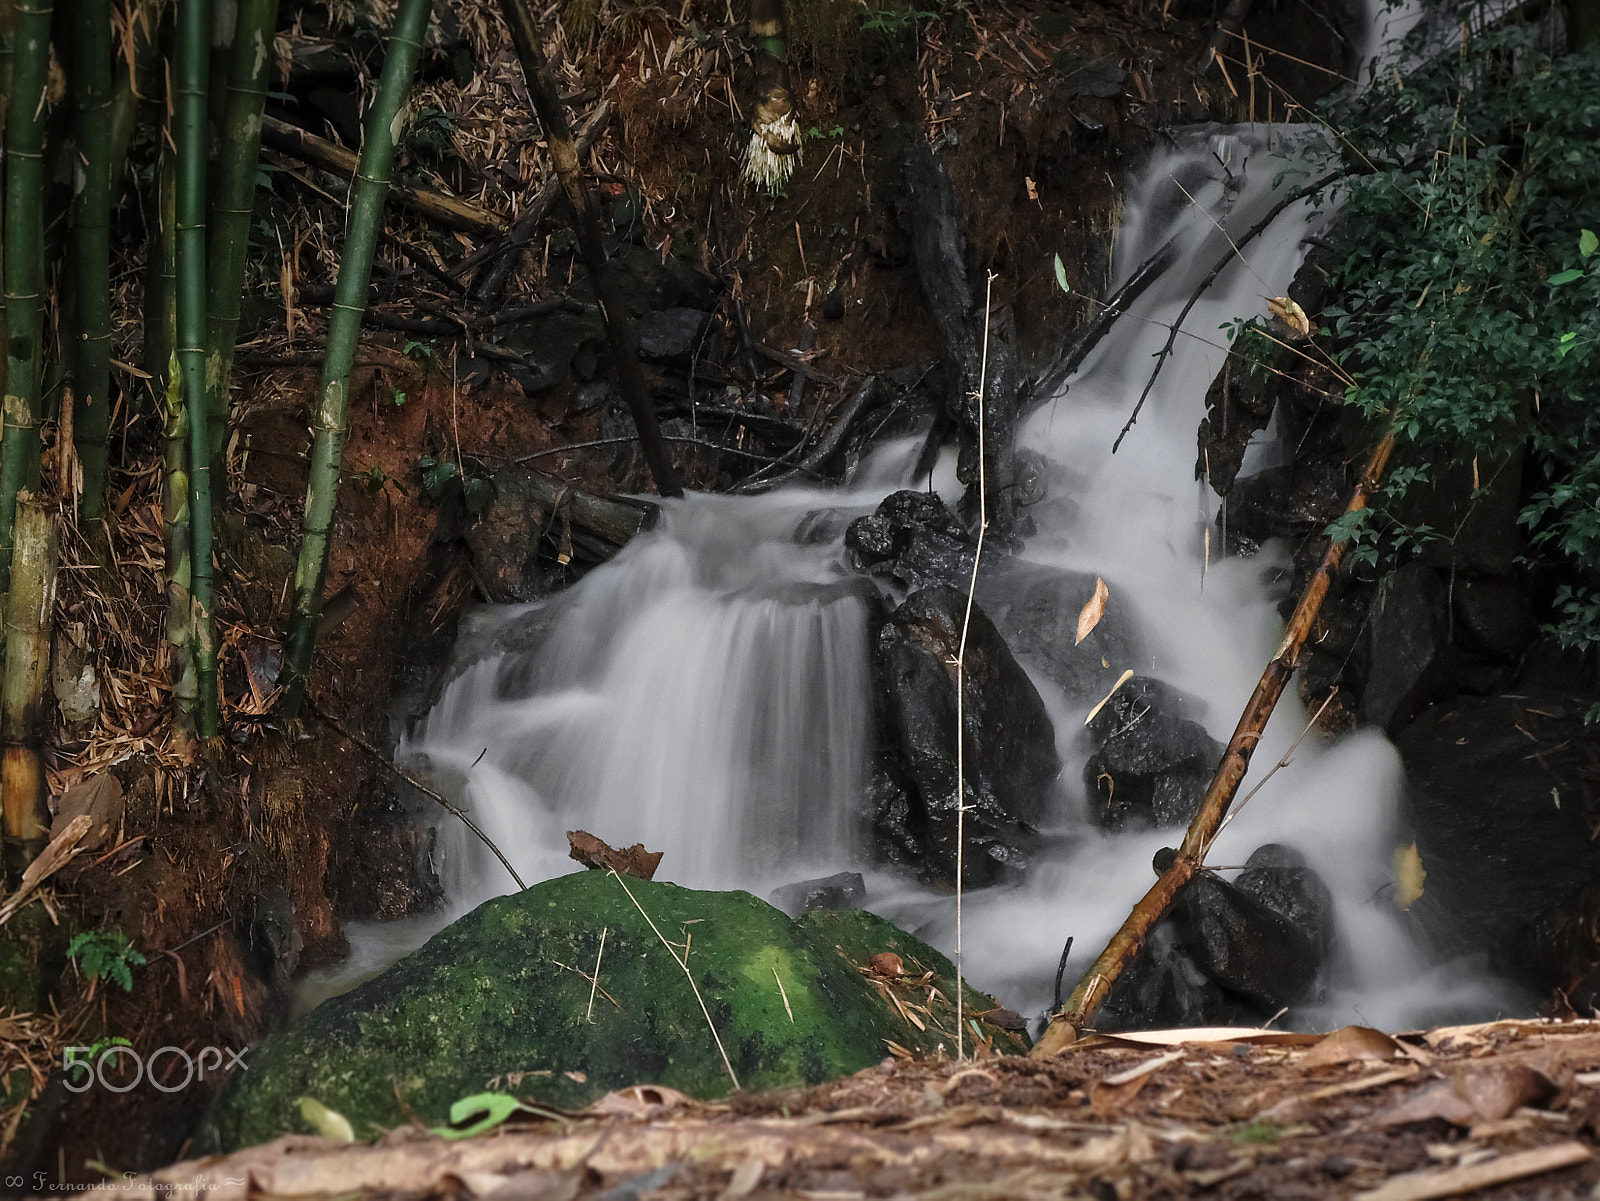 Sony Cyber-shot DSC-W530 sample photo. Little waterfall photography